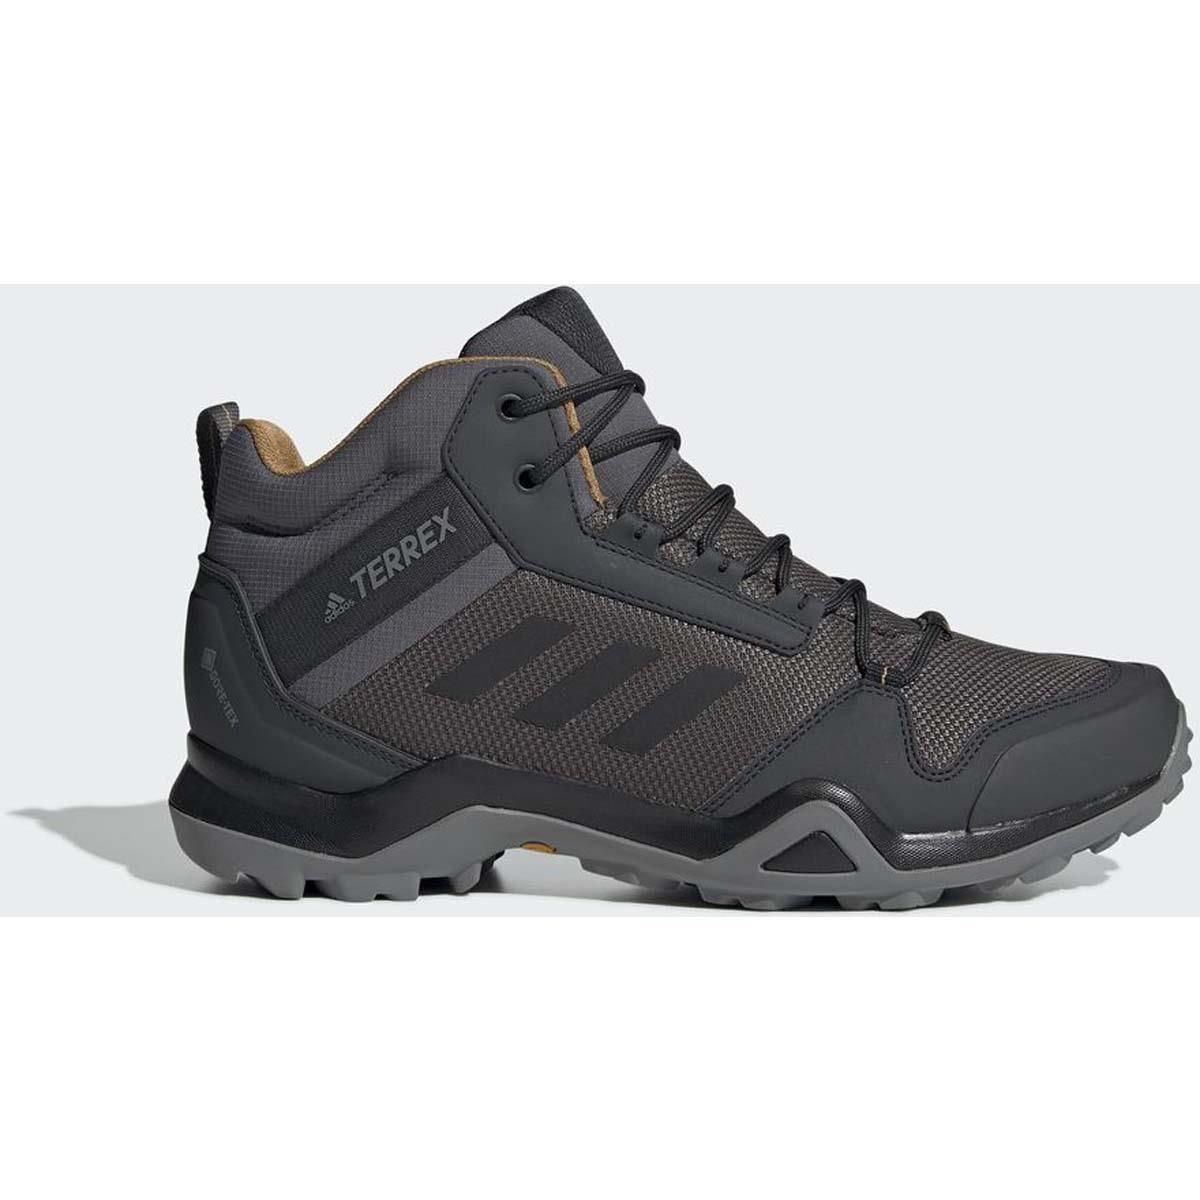 Adidas Terrex AX3 Mid GTX Boots - Men’s | Skis.com